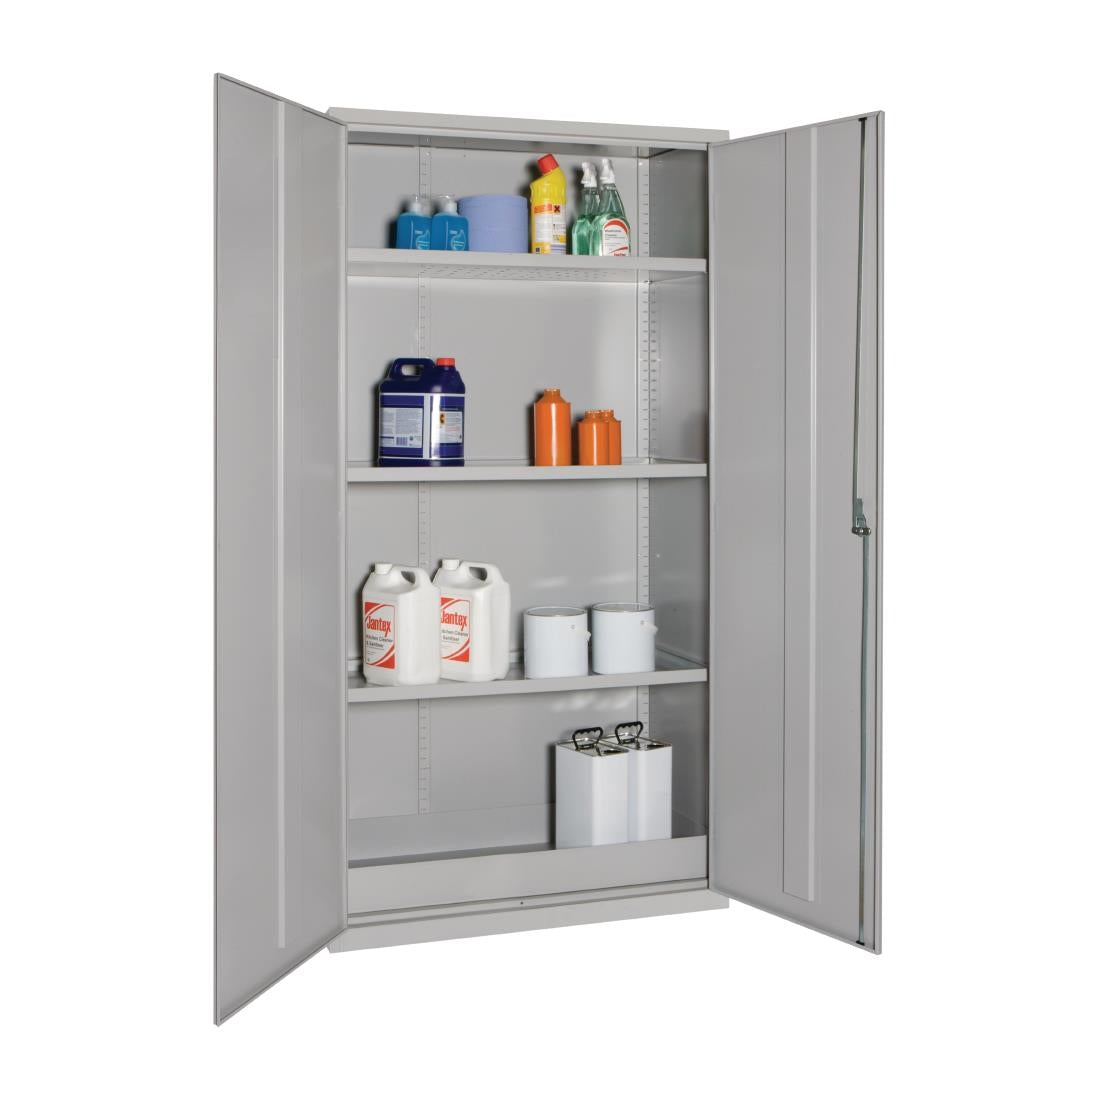 CD992 COSHH Cabinet Double Door Grey 36Ltr JD Catering Equipment Solutions Ltd